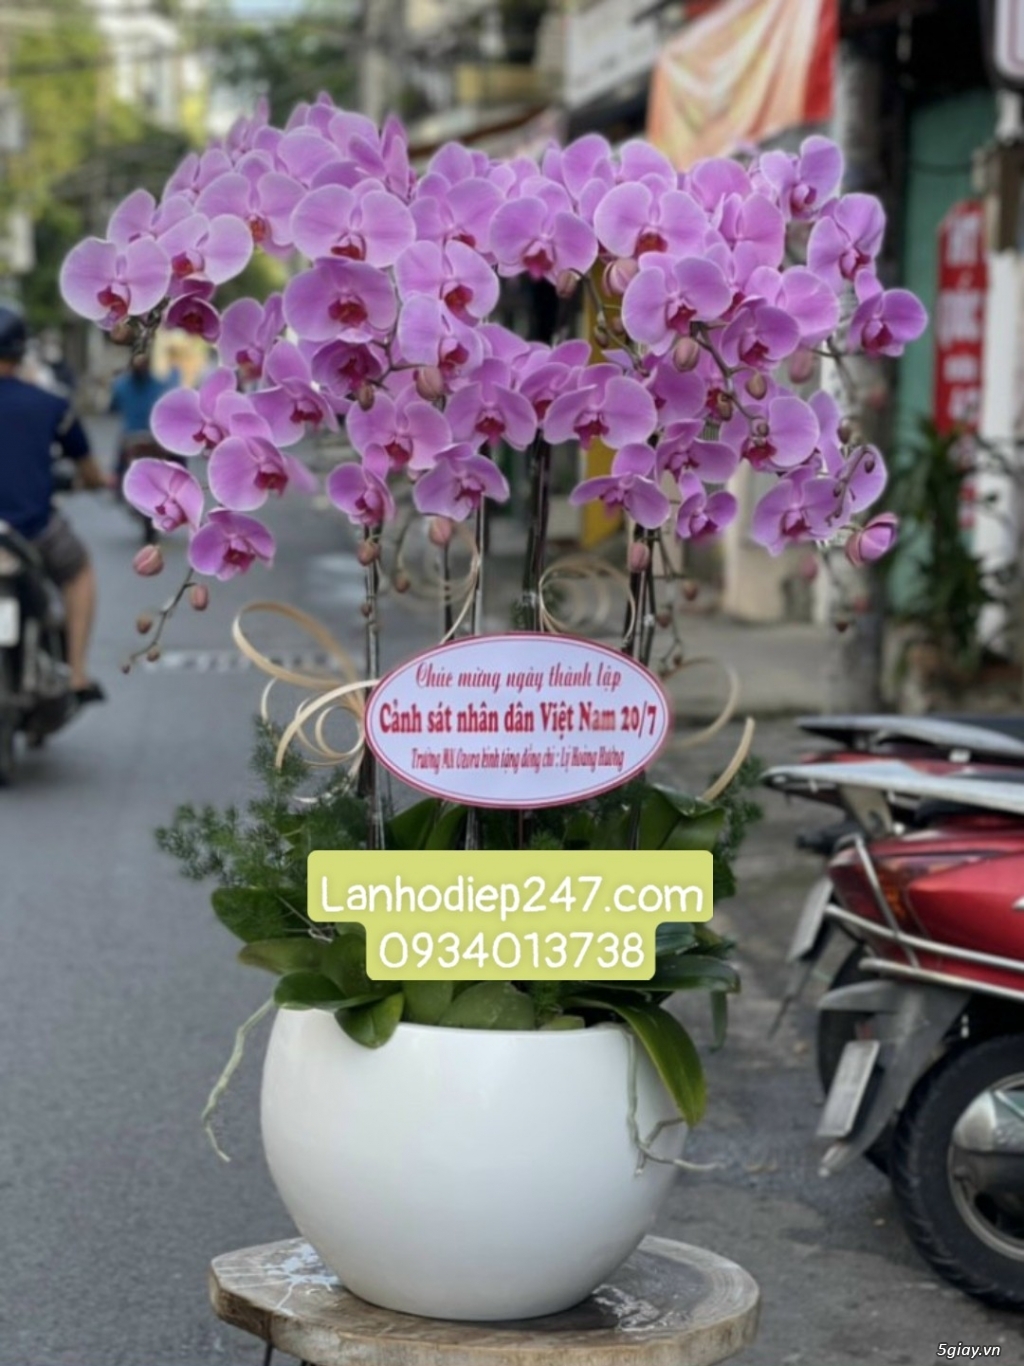 Shop hoa chuyên lan hồ điệp cao cấp nổi tiếng tphcm - Hoa Sài Gòn 247 - 16